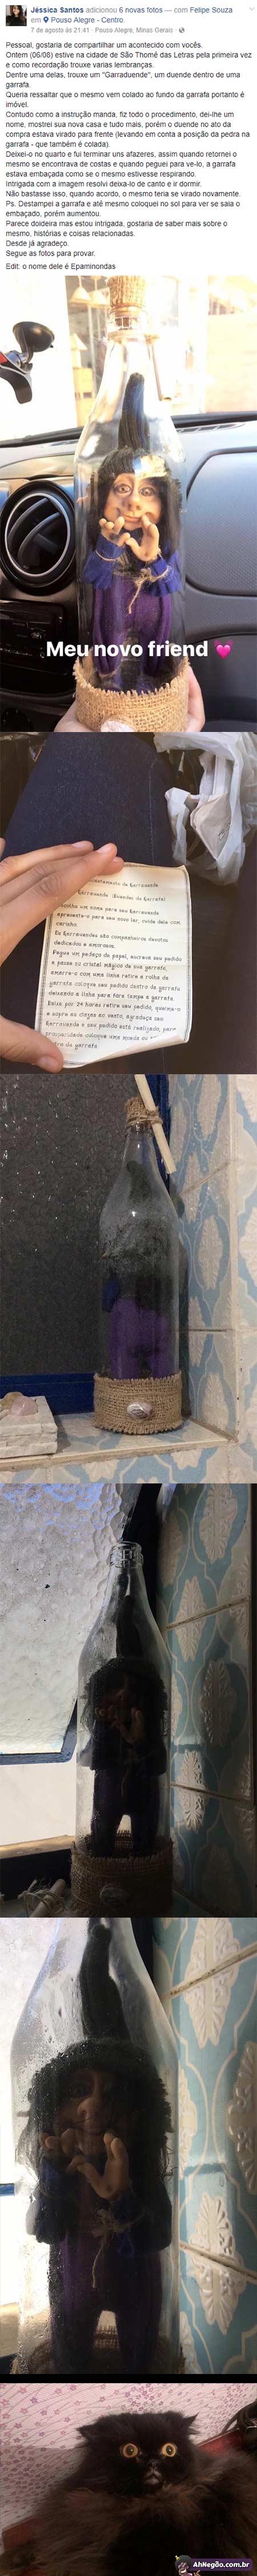 É correto ter um duende enclausurado em uma garrafa?